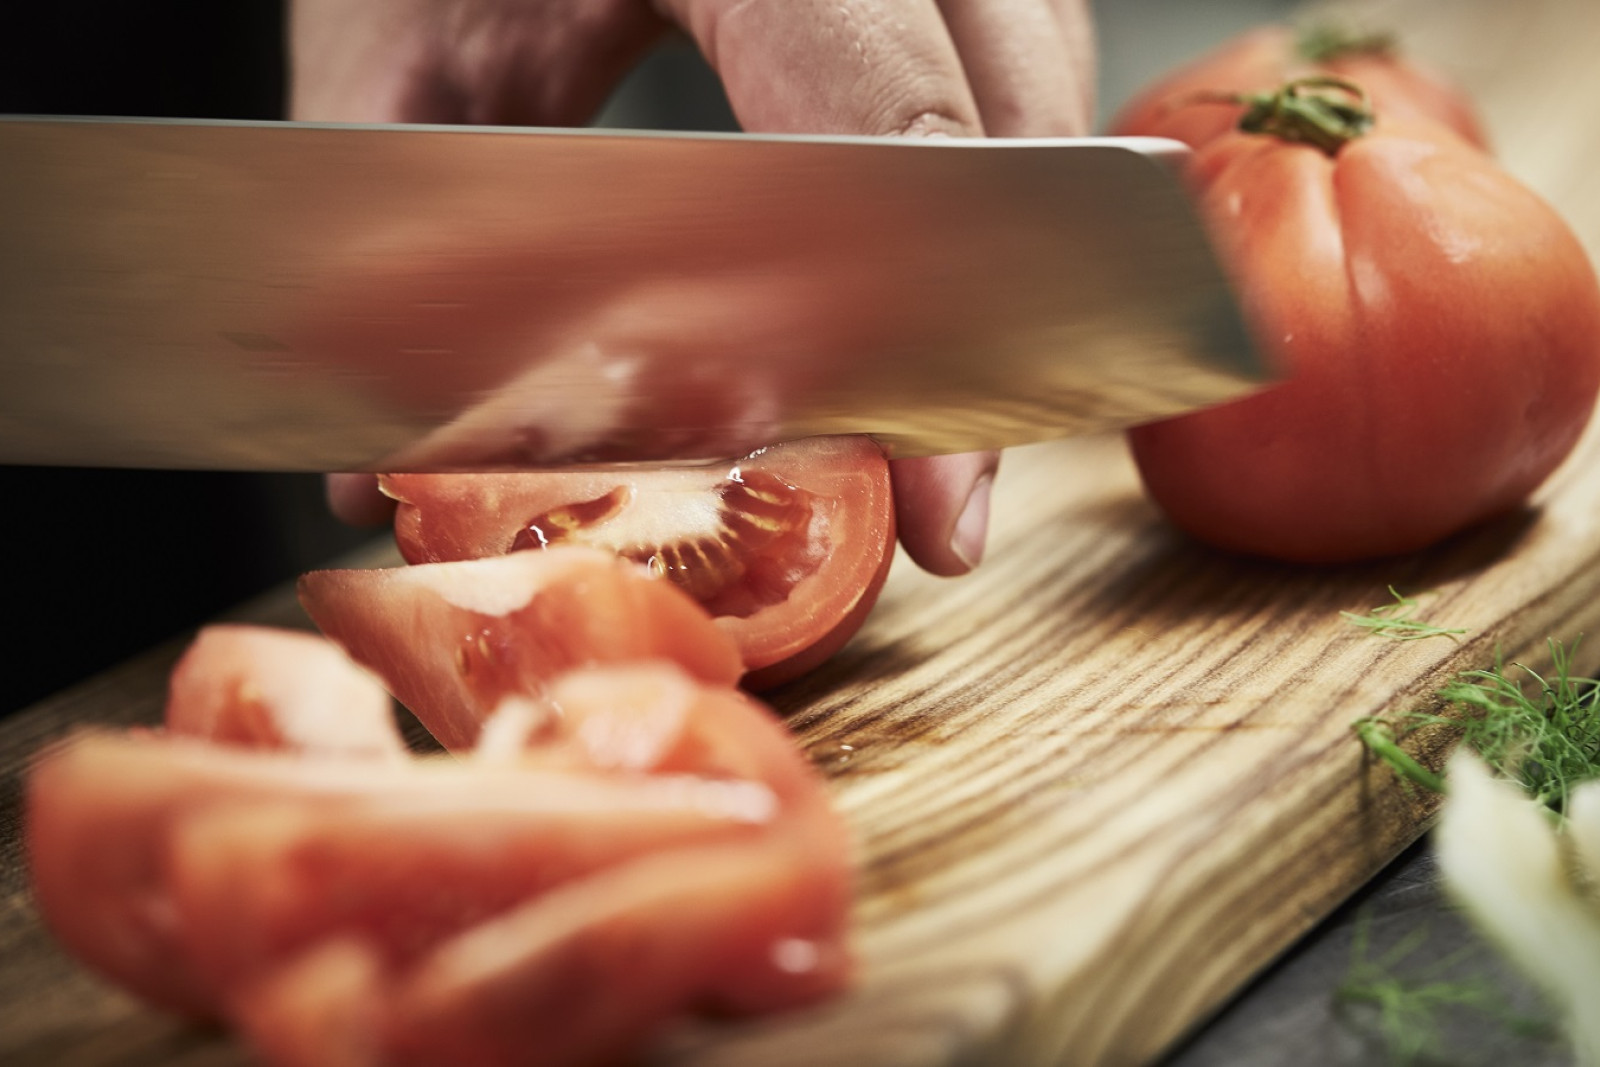 Kok skærer tomater i både